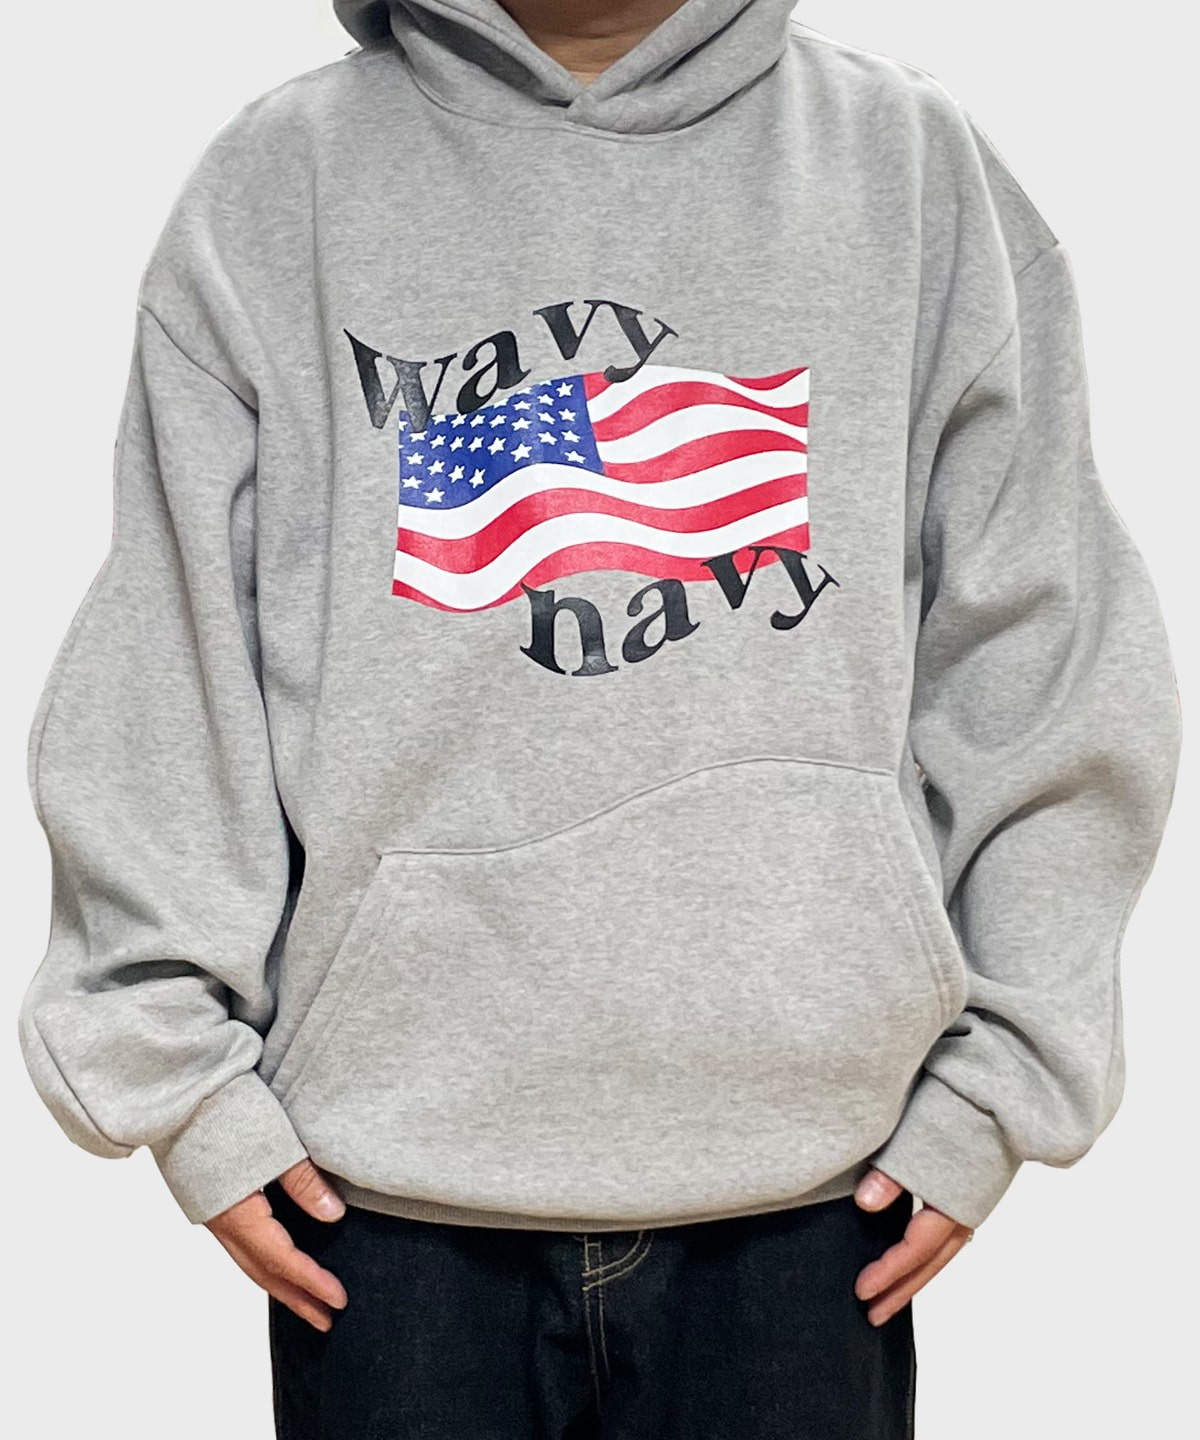 wavy navy hoodie (grey)